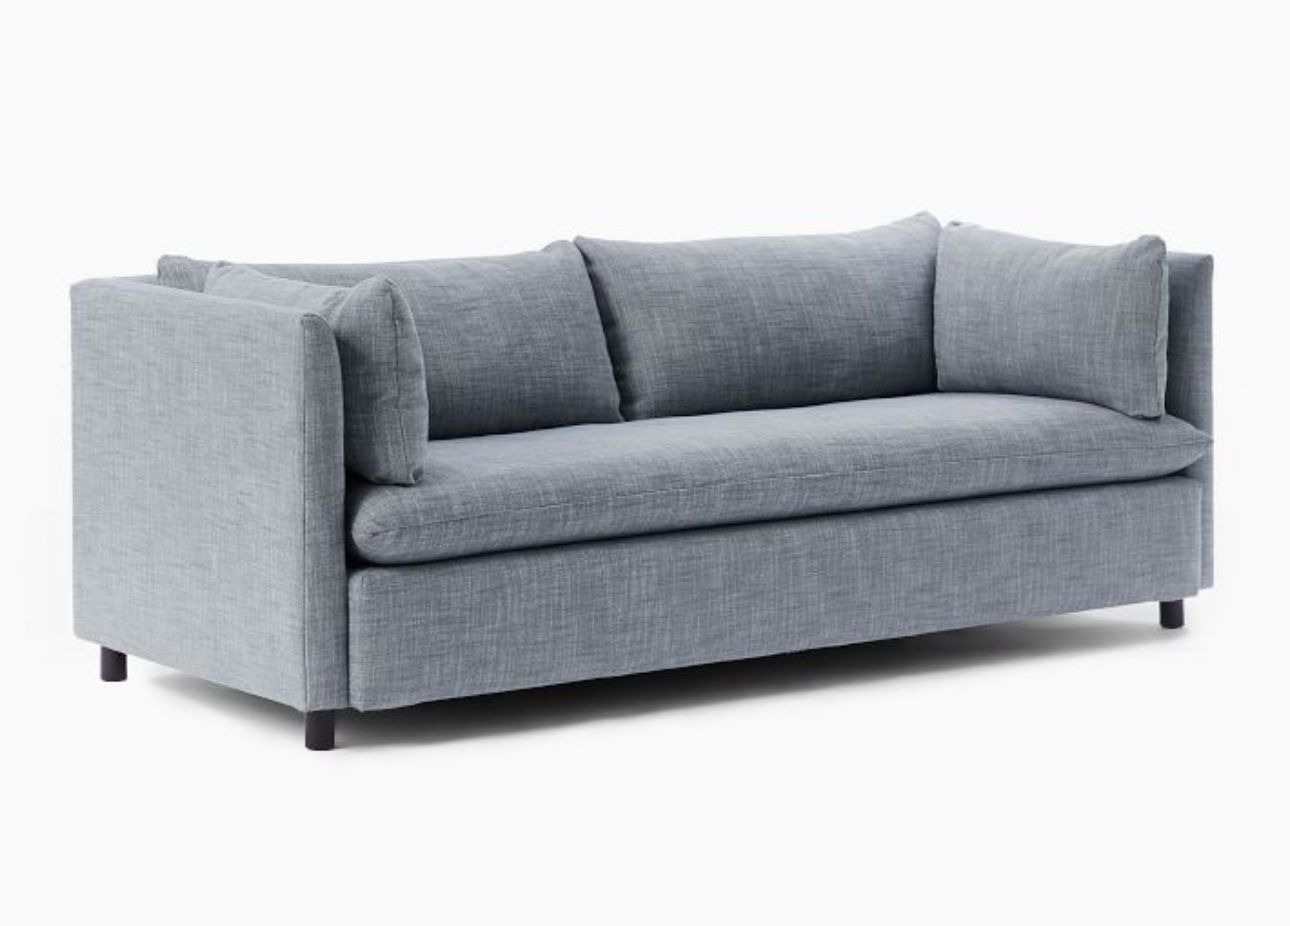 West Elm Queen Pullout Couch / Sleeper Sofa - Memory Foam Mattress 